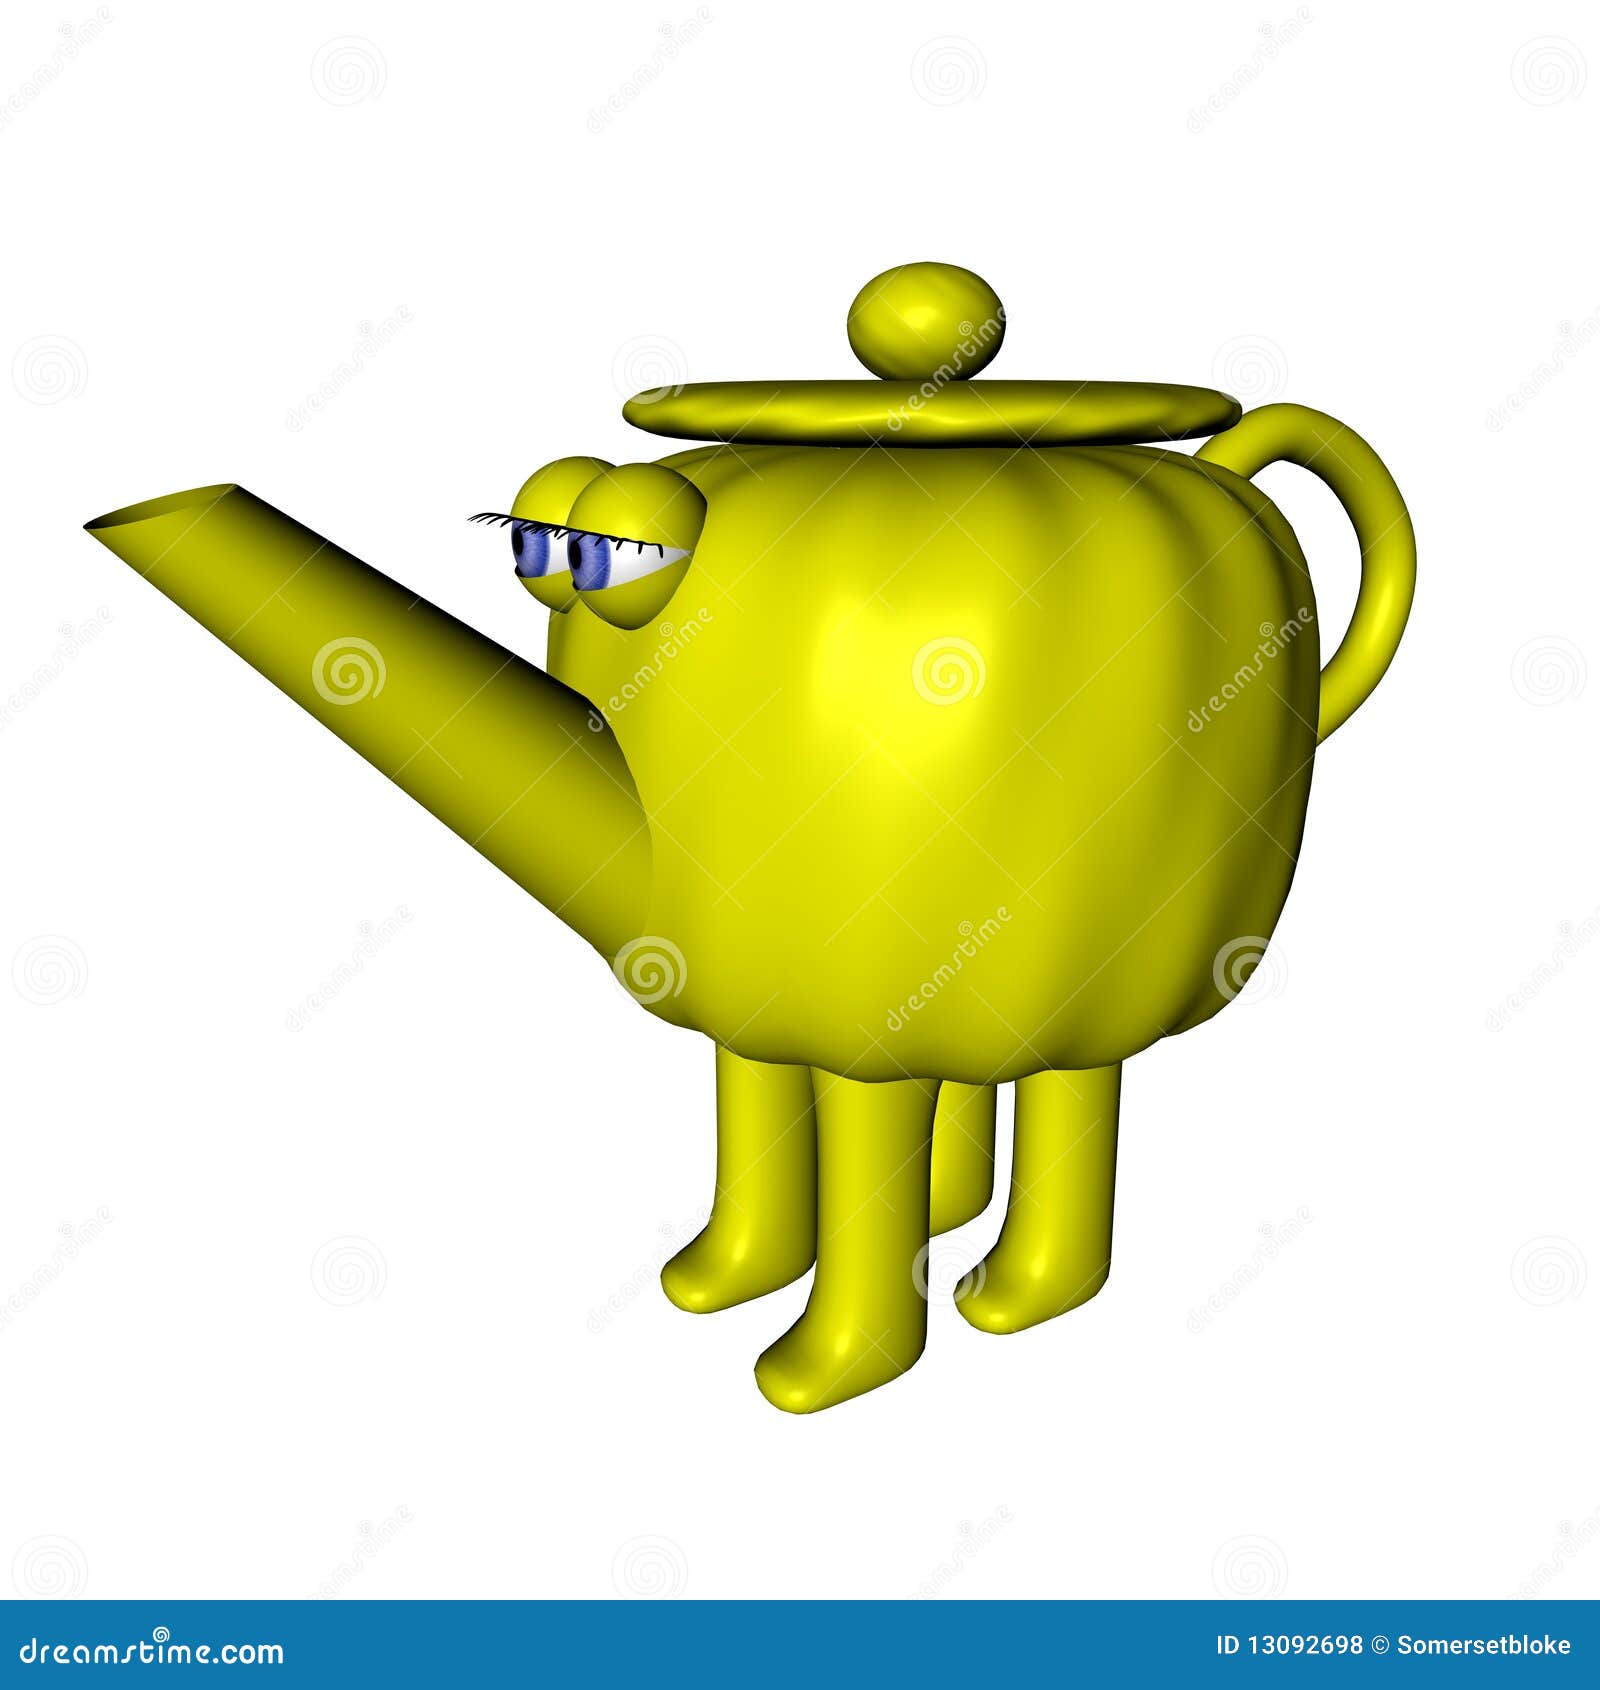 Cartoon Teapot Royalty Free Stock Photos  Image: 13092698